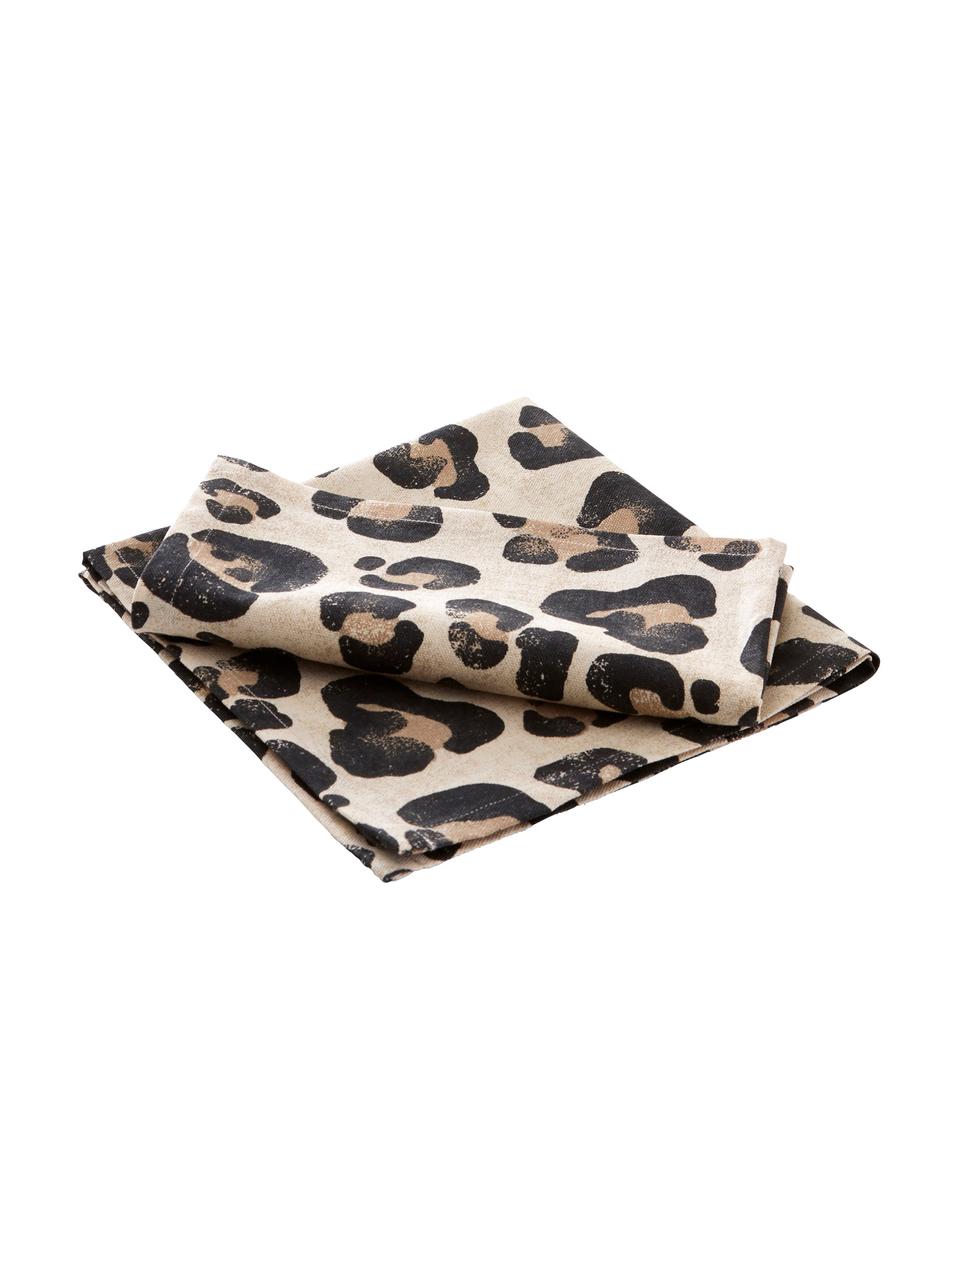 Ubrousek s leopardím potiskem Jill, 2 ks, 100 % bavlna, Béžová, černá, Š 45 cm, D 45 cm